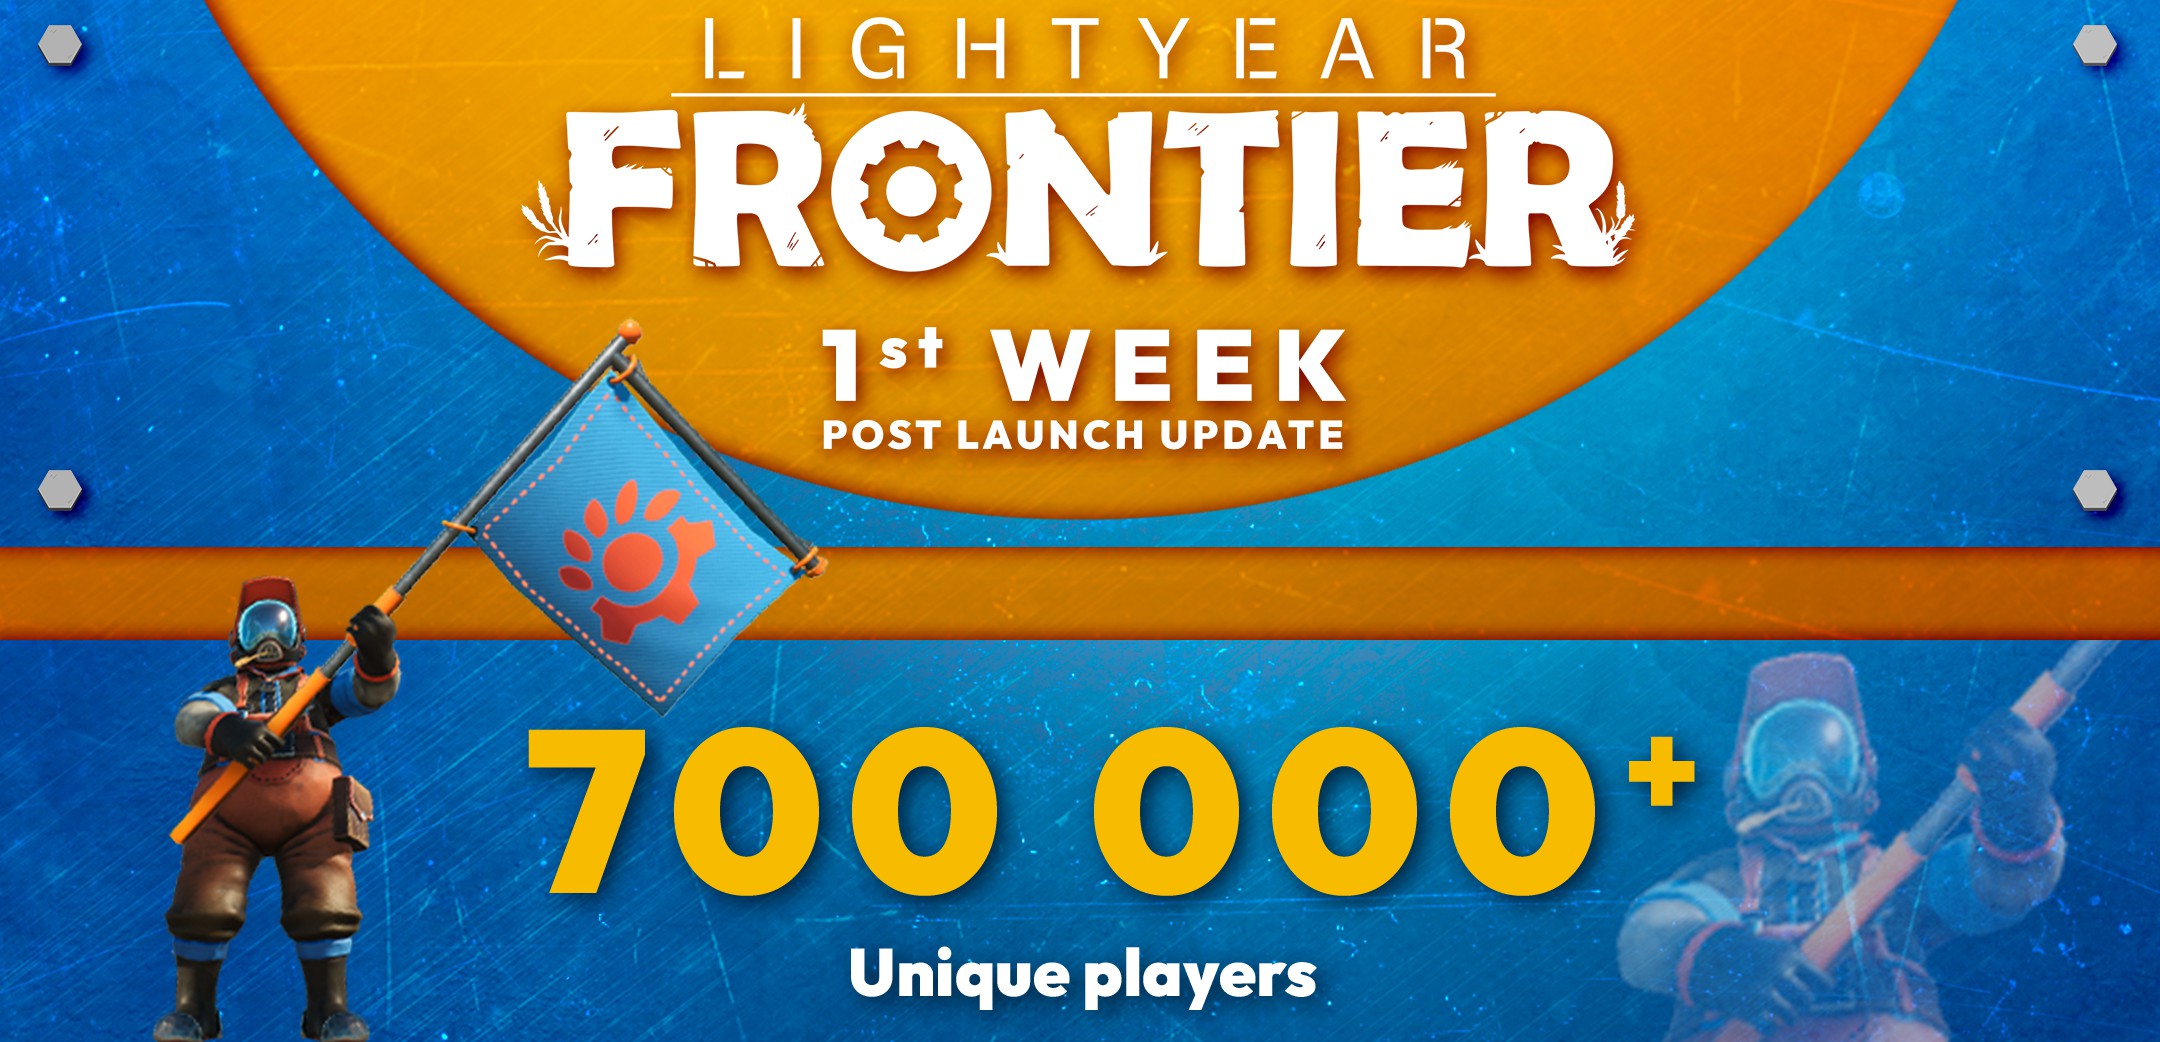 機甲種田遊戯《光年邊境》首周玩家數超70萬 更新路線圖制作中